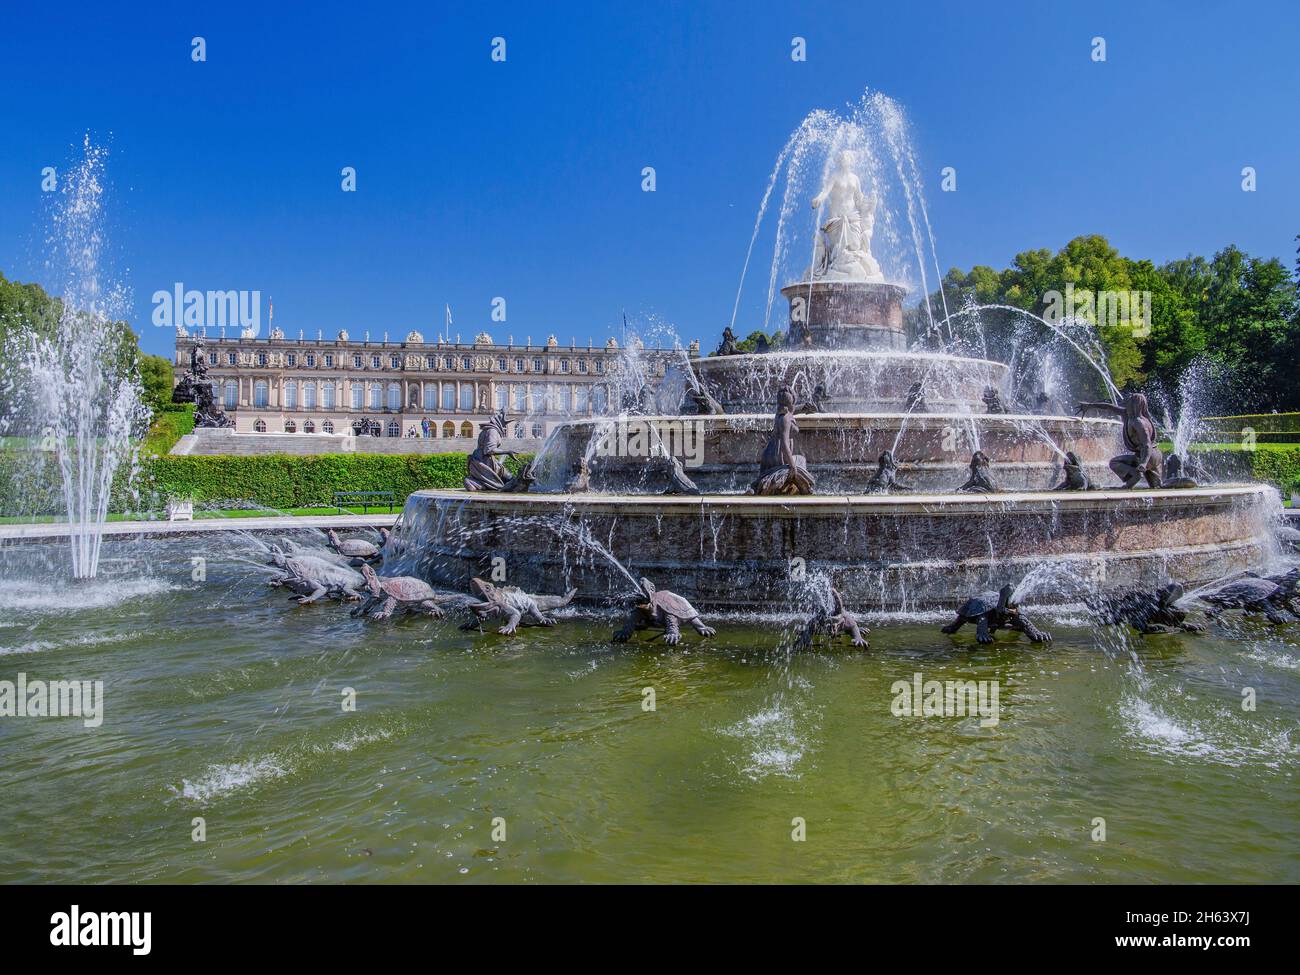 latonabrunnen vor der Gartenseite des Schlosses herrenchiemsee,chiemsee Gemeinde,herreninsel,chiemgau,oberbayern,bayern,deutschland Stockfoto